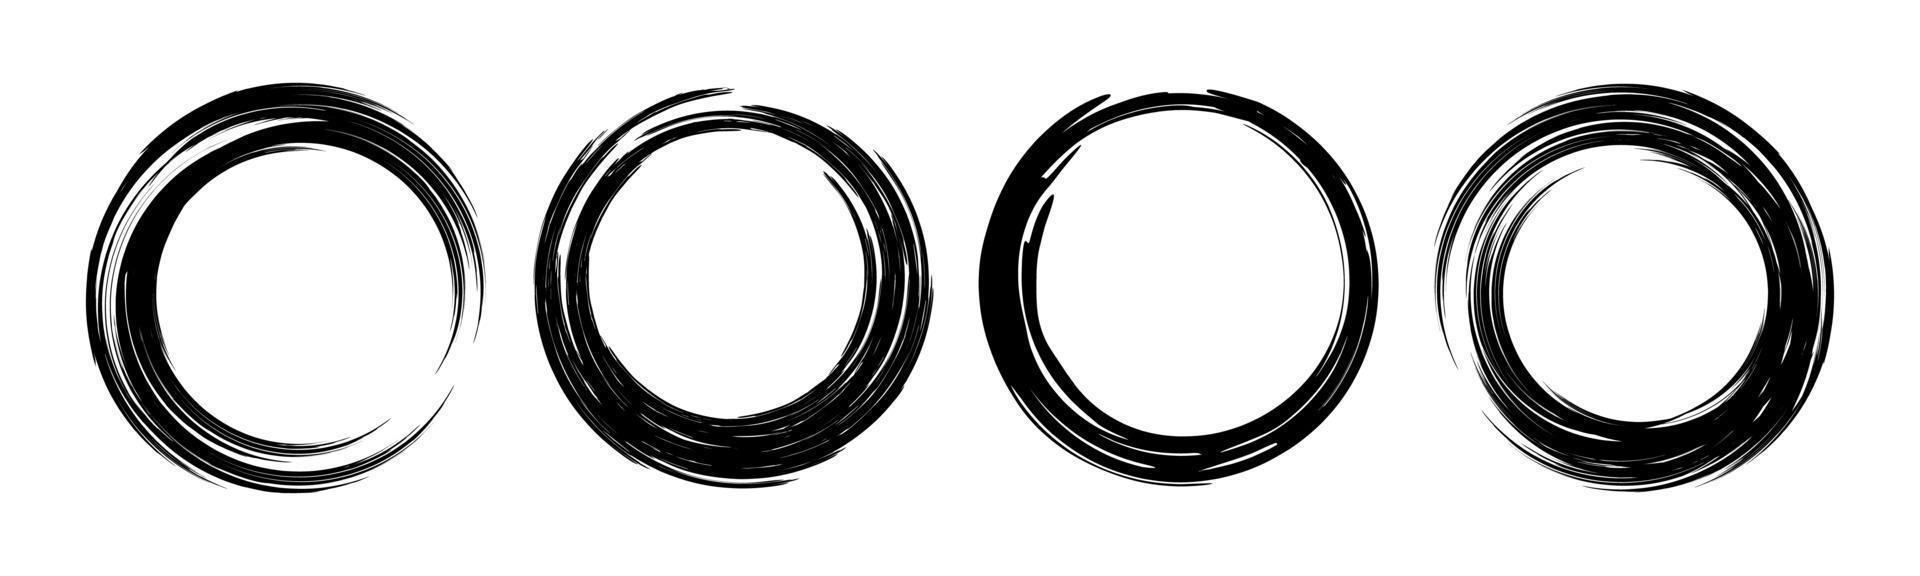 conjunto de marcos redondos grunge pintura negra trazo de pincel círculo aislado enso zen vector